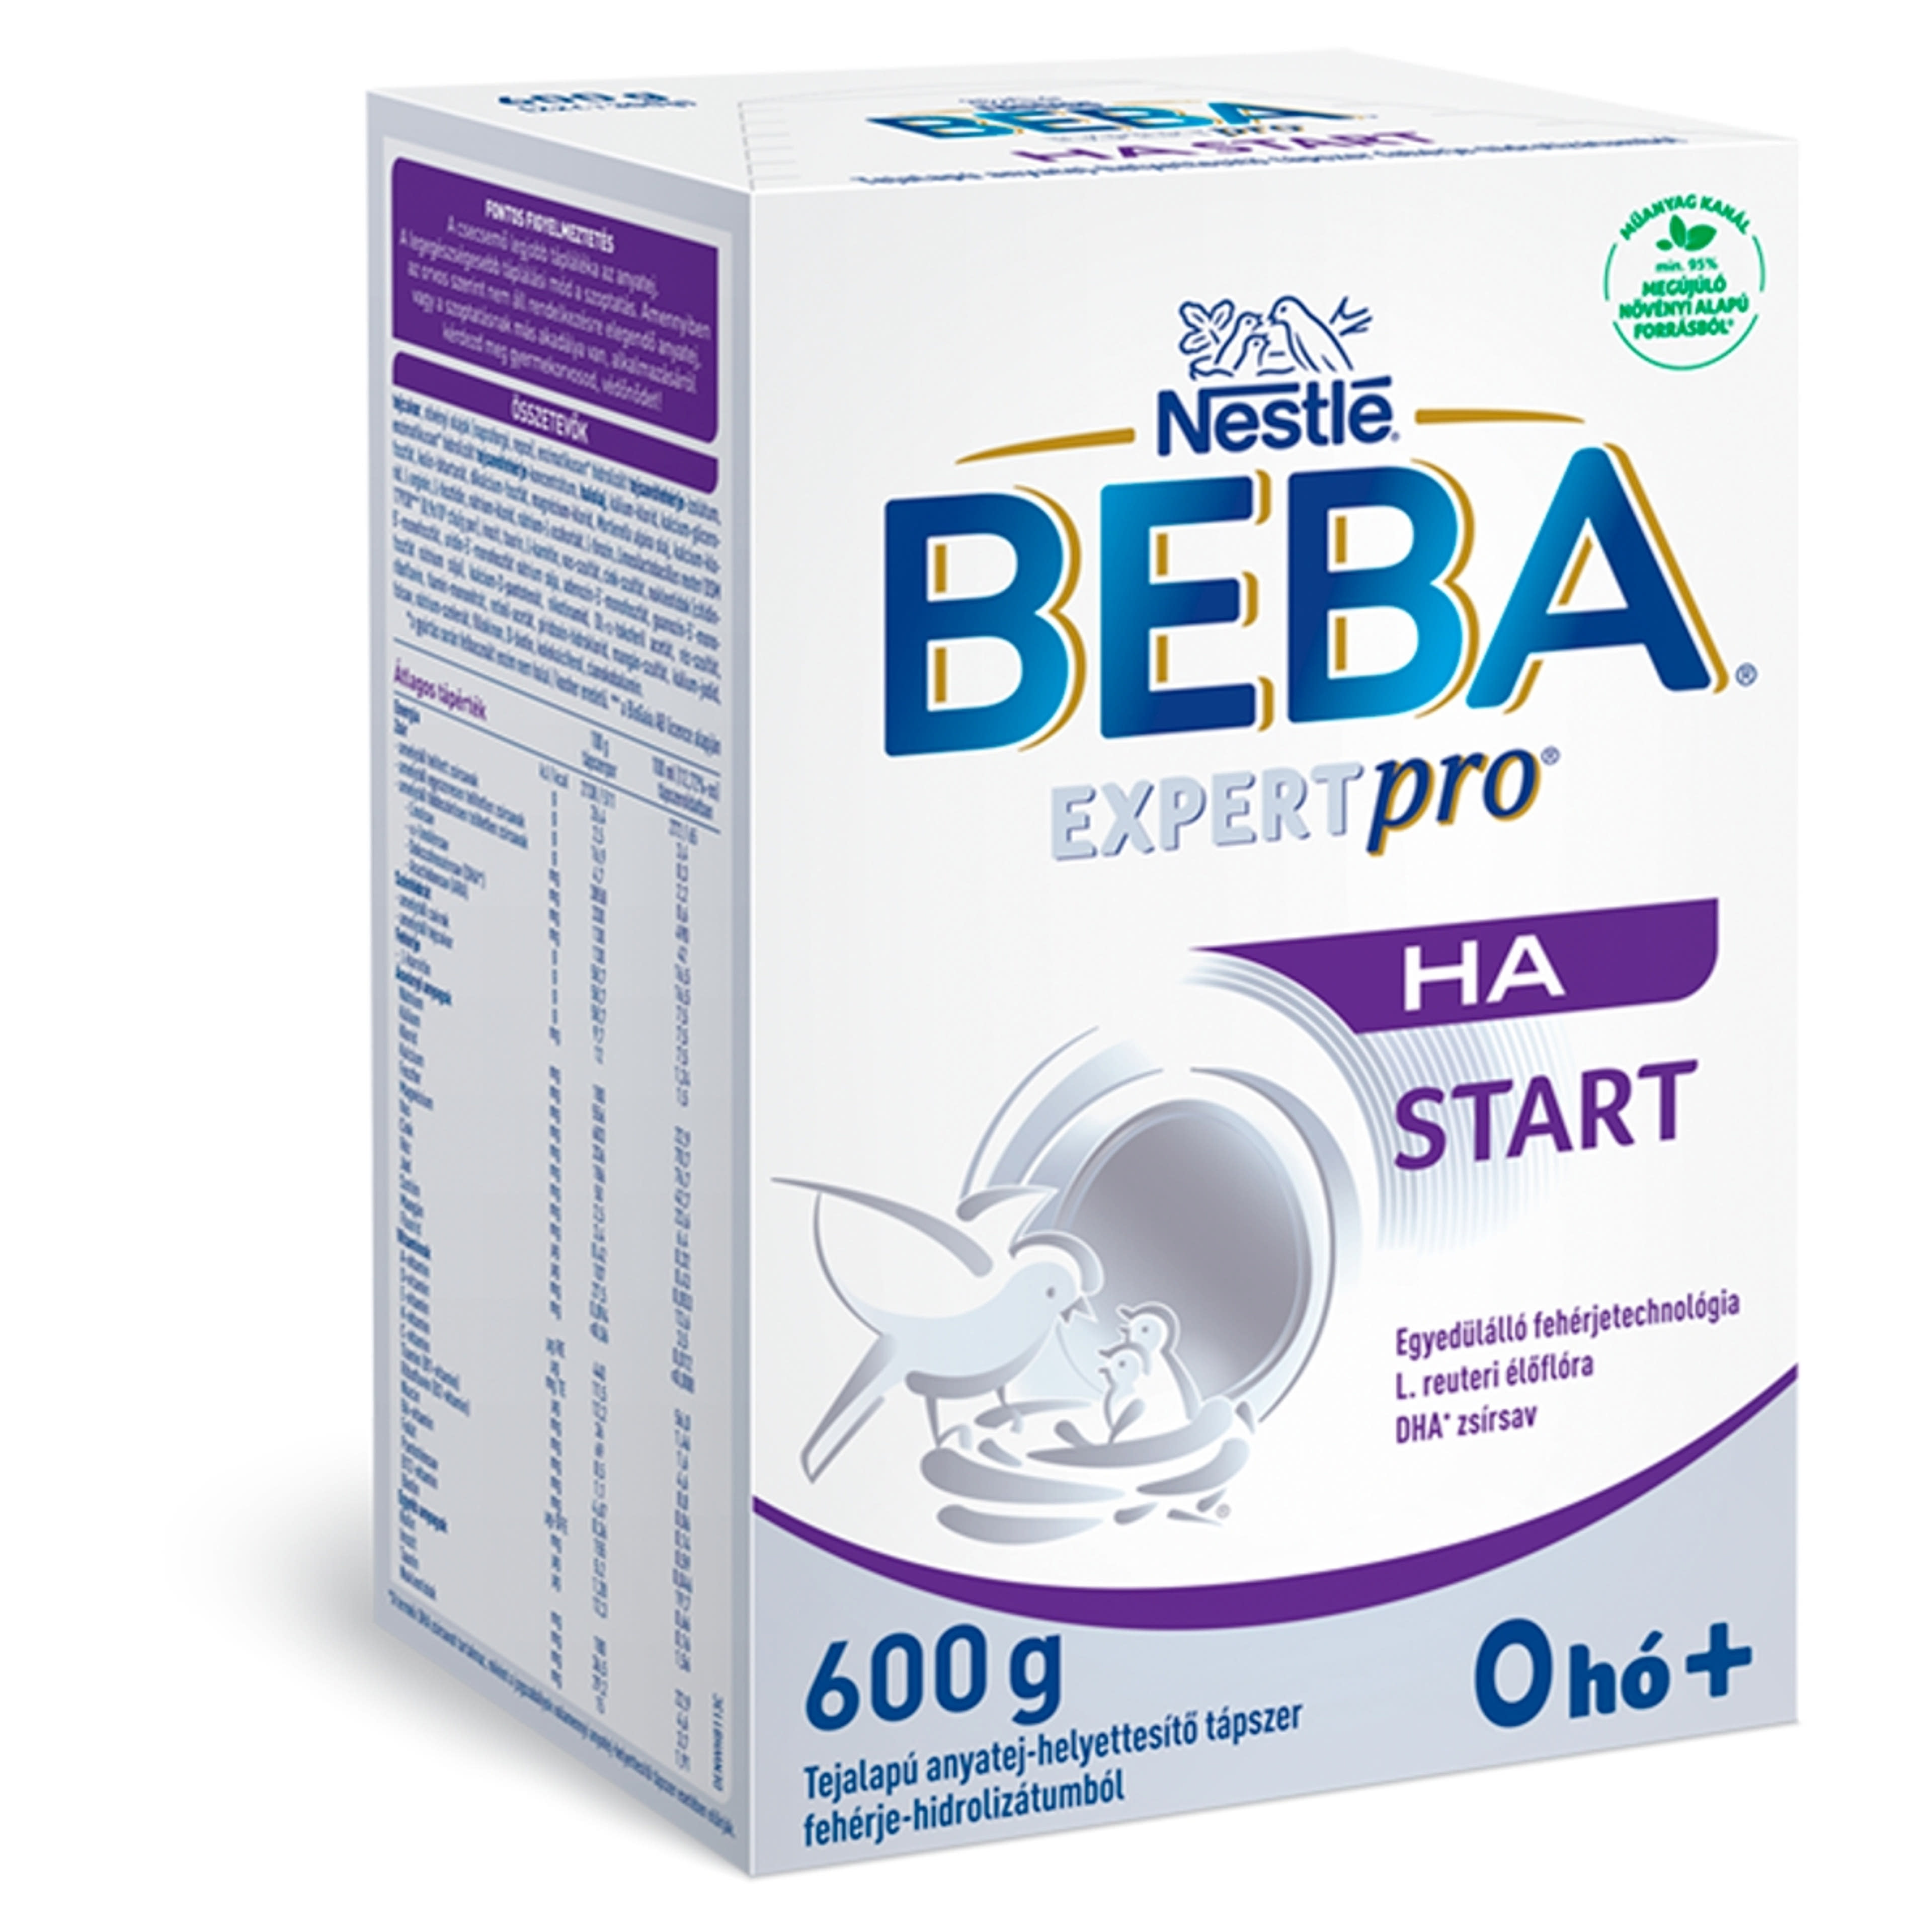 Beba Expertpro HA Start tejalapú anyatej-helyettesítő tápszer fehérje-hidrolizátumból 0 hónapos kortól -  600 g-2